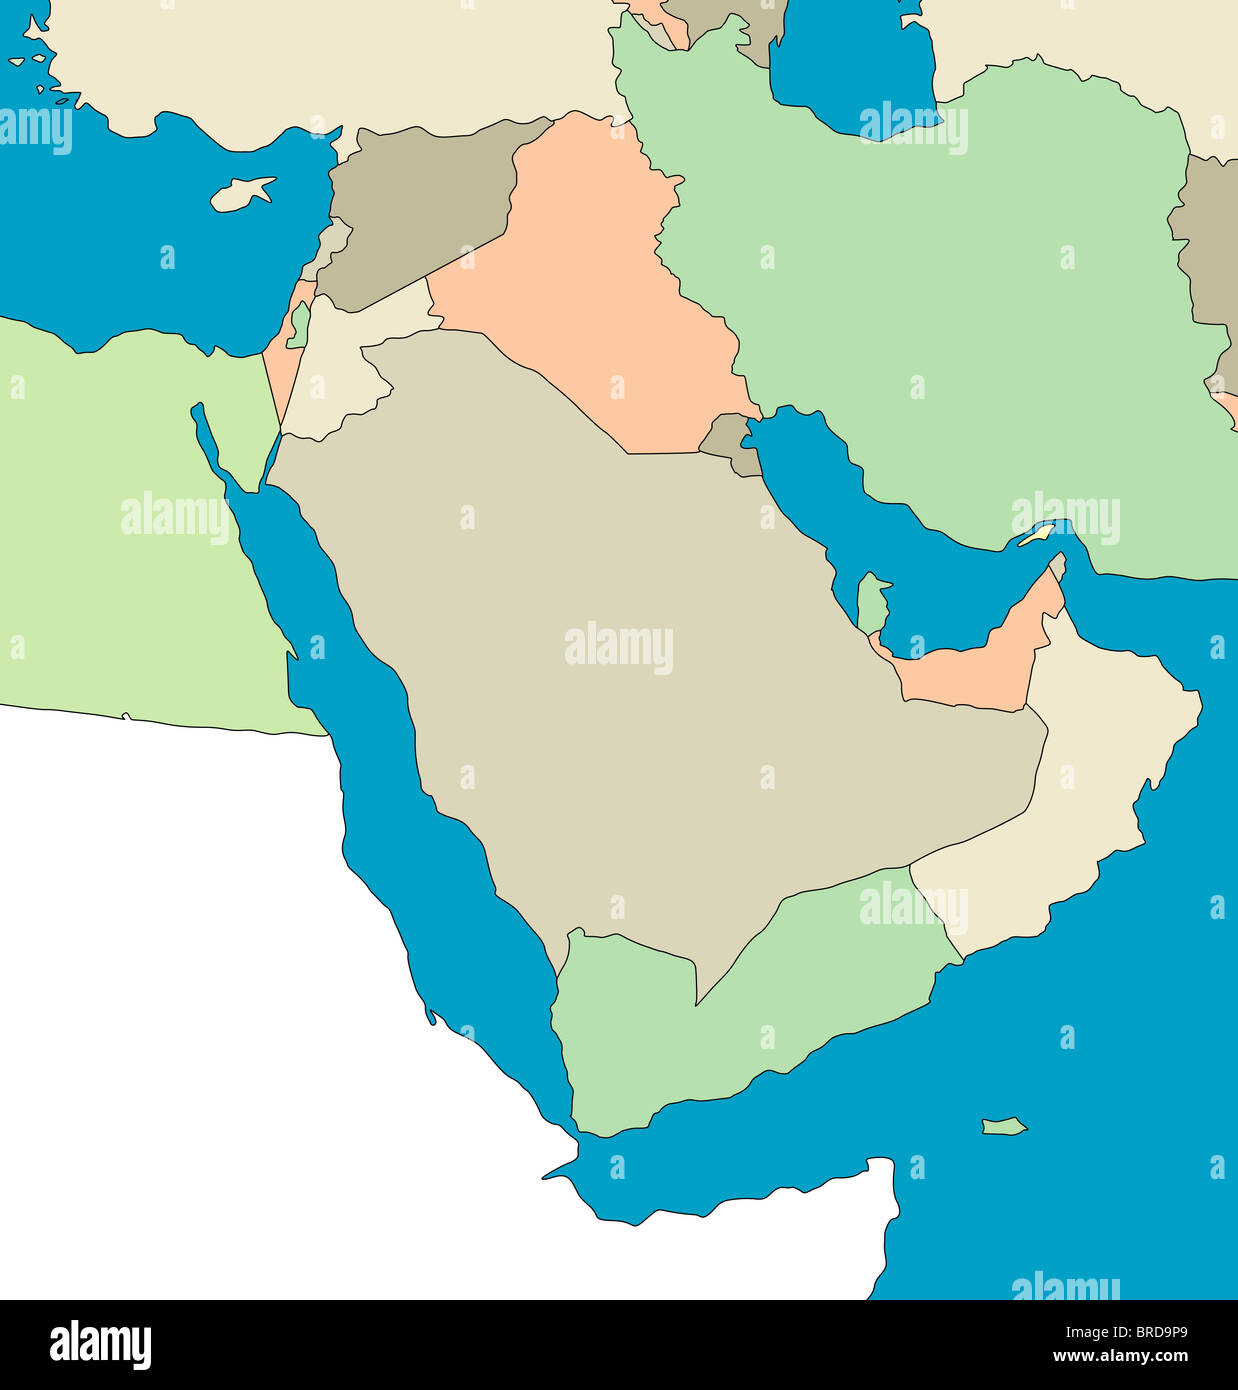 Mappa stilizzata della regione del Medio Oriente. Nessuna didascalia. Tutto su sfondo bianco. Foto Stock